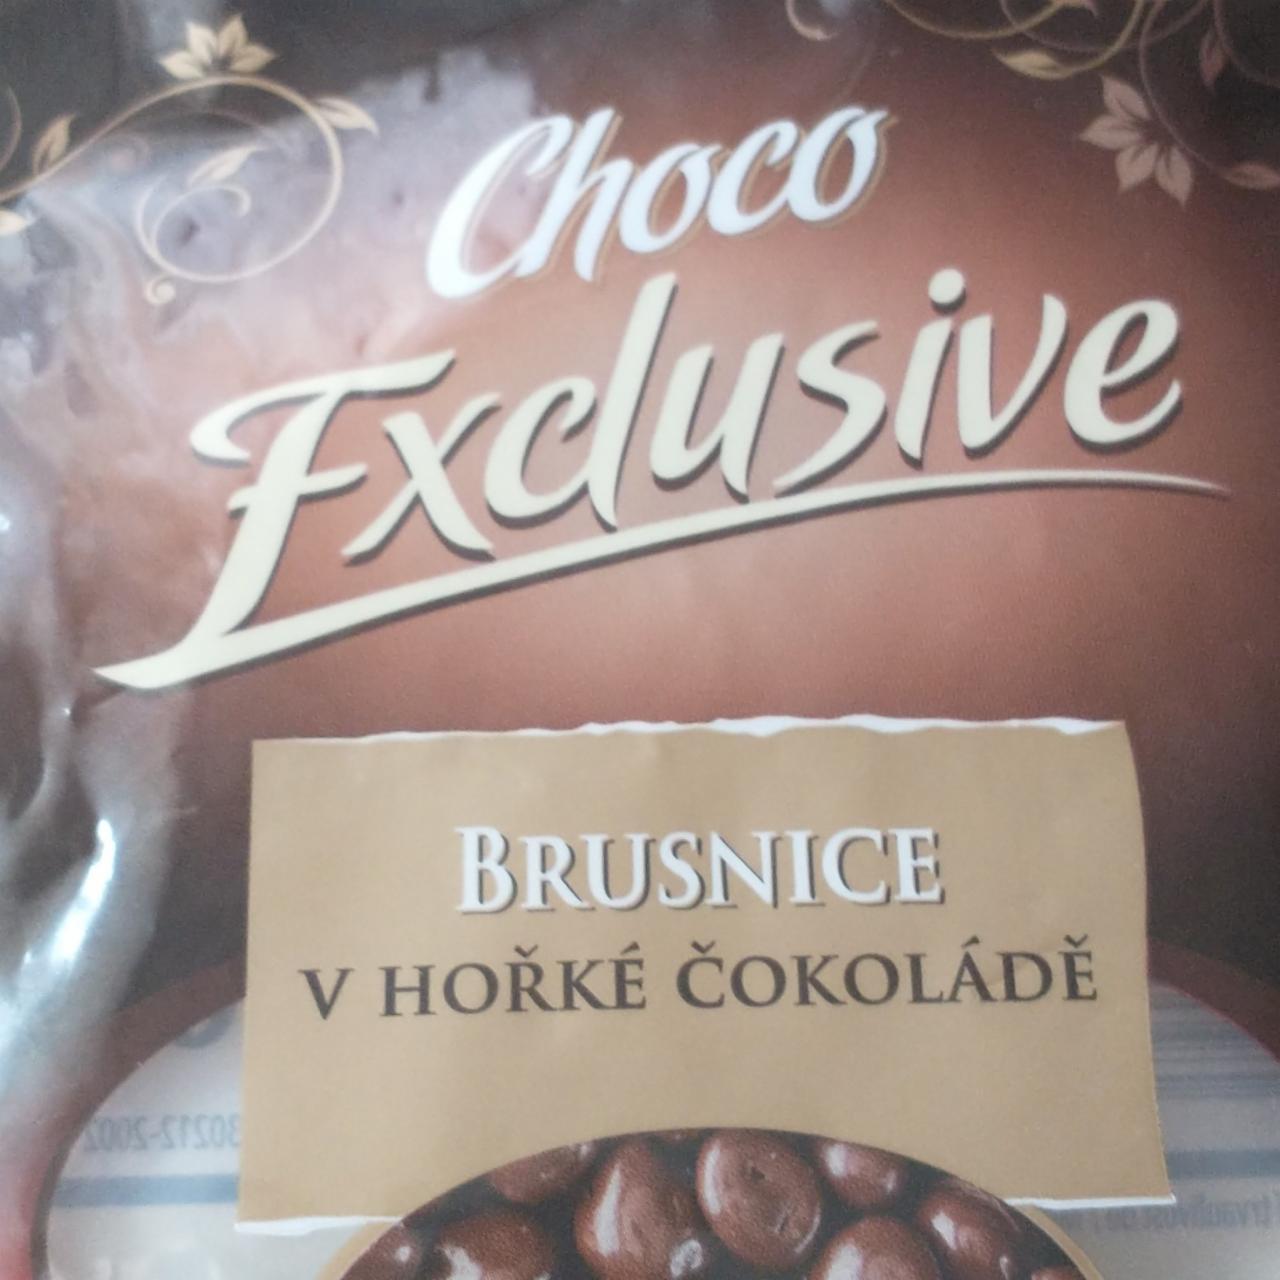 Fotografie - Brusnice v hořké čokoládě Choco Exclusive